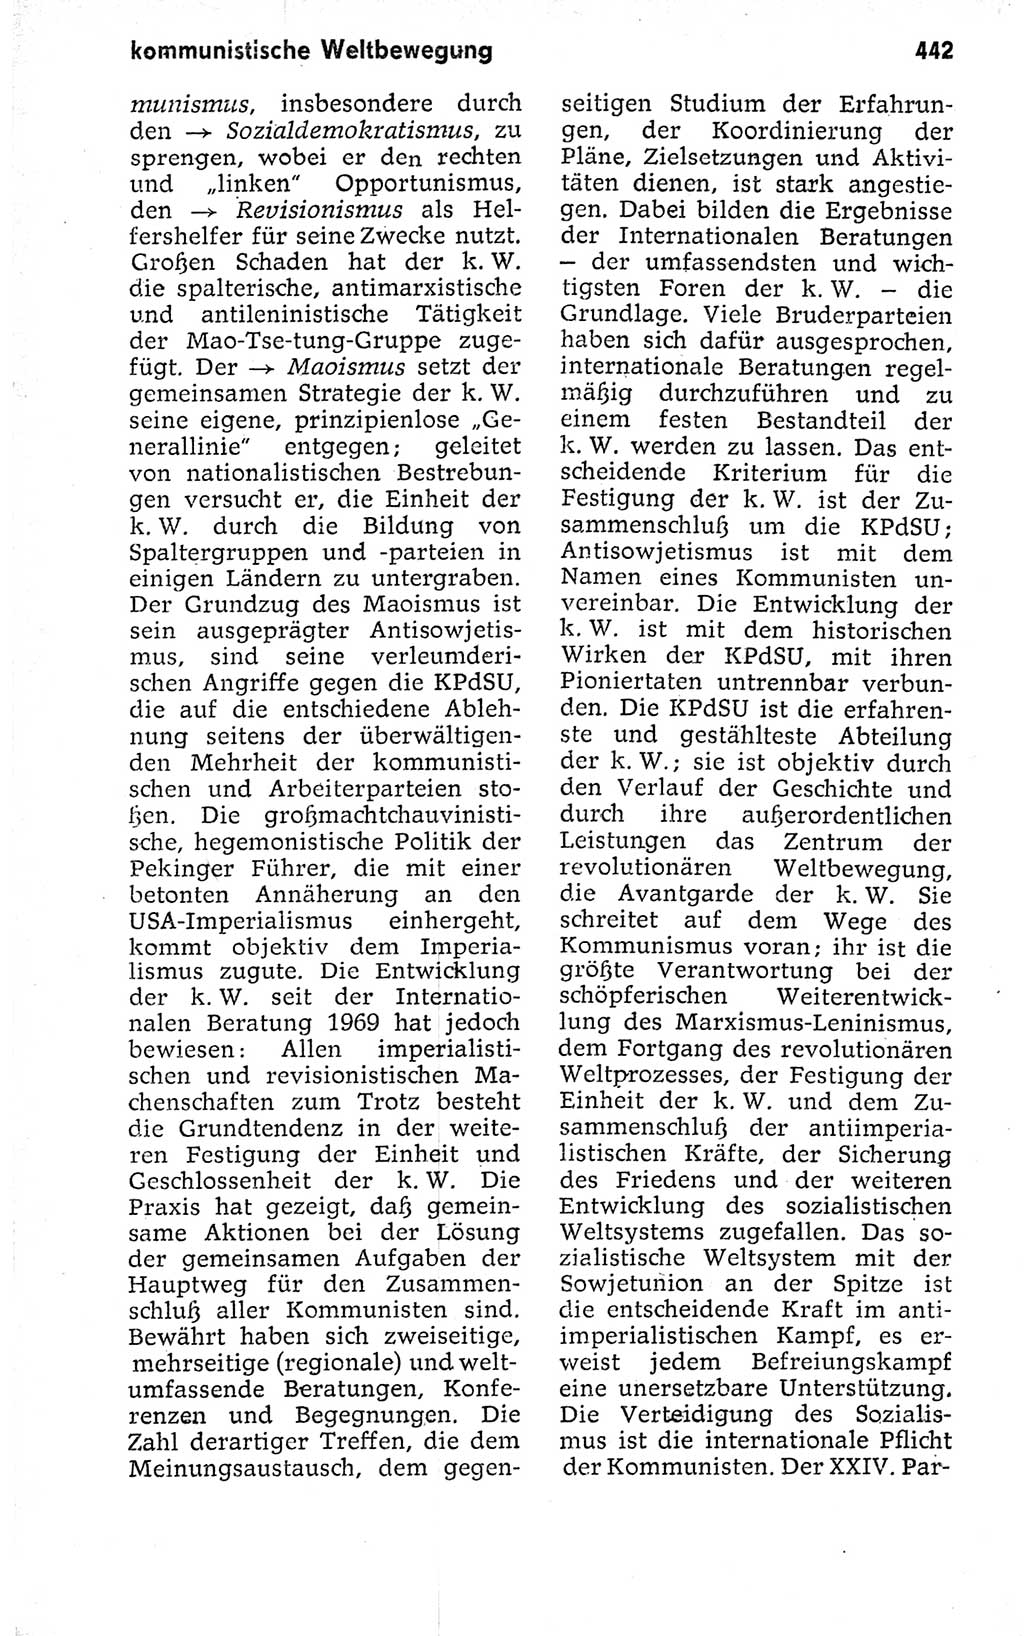 Kleines politisches Wörterbuch [Deutsche Demokratische Republik (DDR)] 1973, Seite 442 (Kl. pol. Wb. DDR 1973, S. 442)